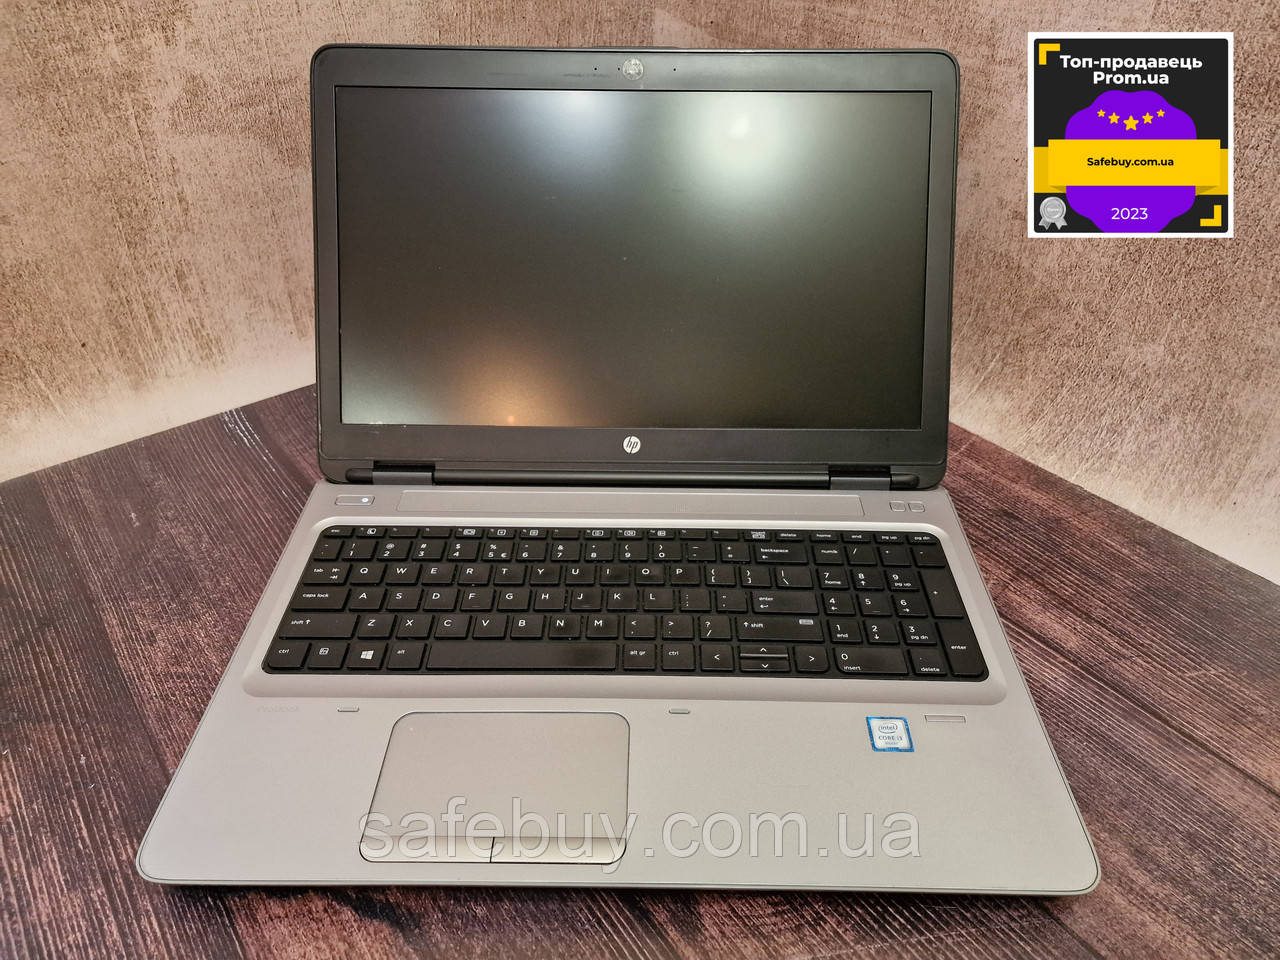 Офисный ноутбук HP ProBook 650 G2 (Core i3-6100U/8Gb/HD Graphics 520/SSD 128Gb/TN)